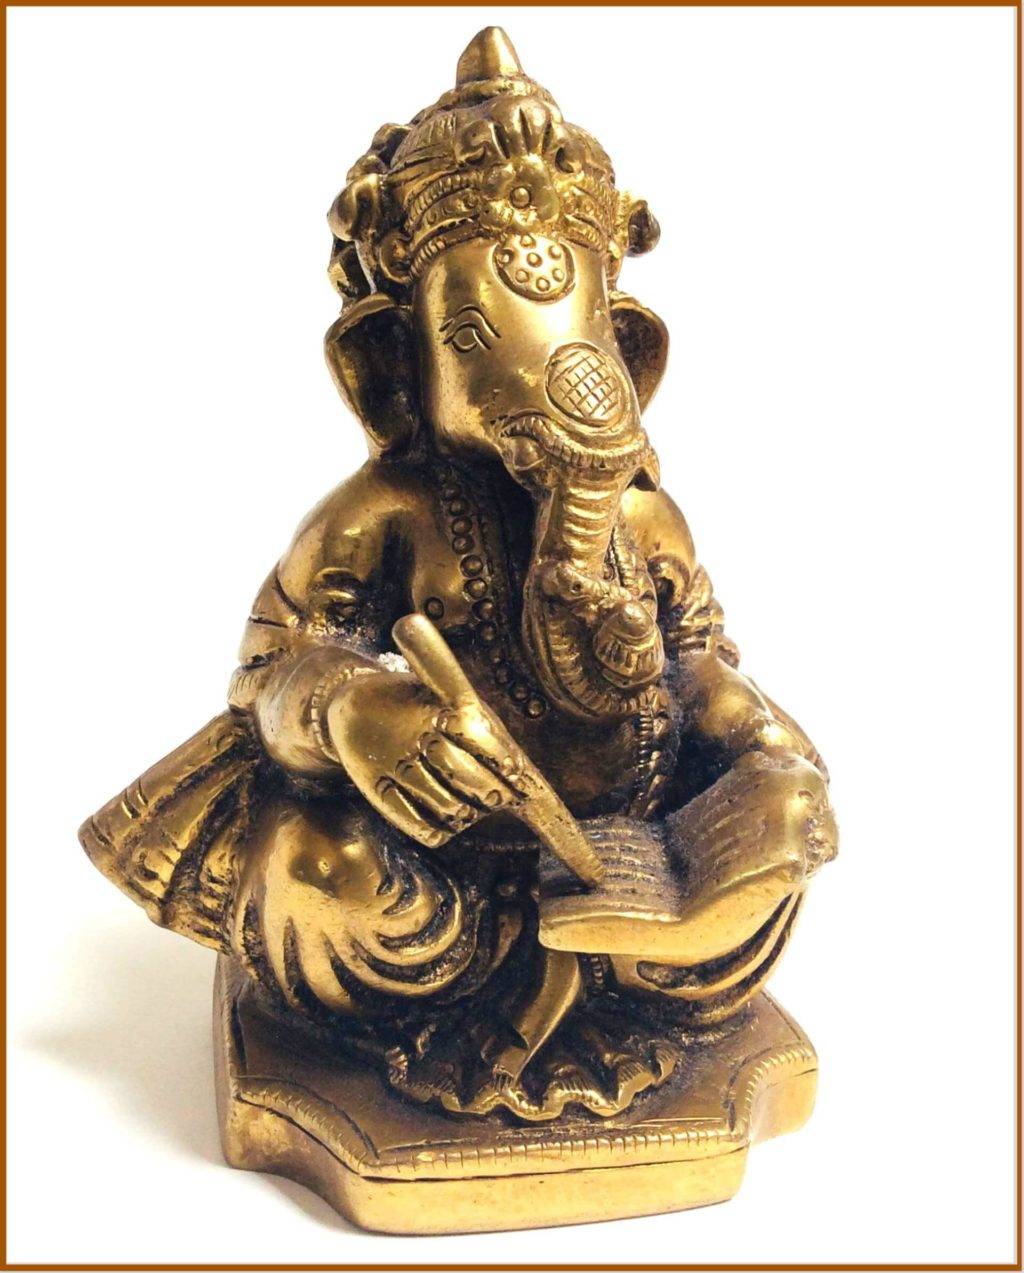 Lord Ganesha at MVC